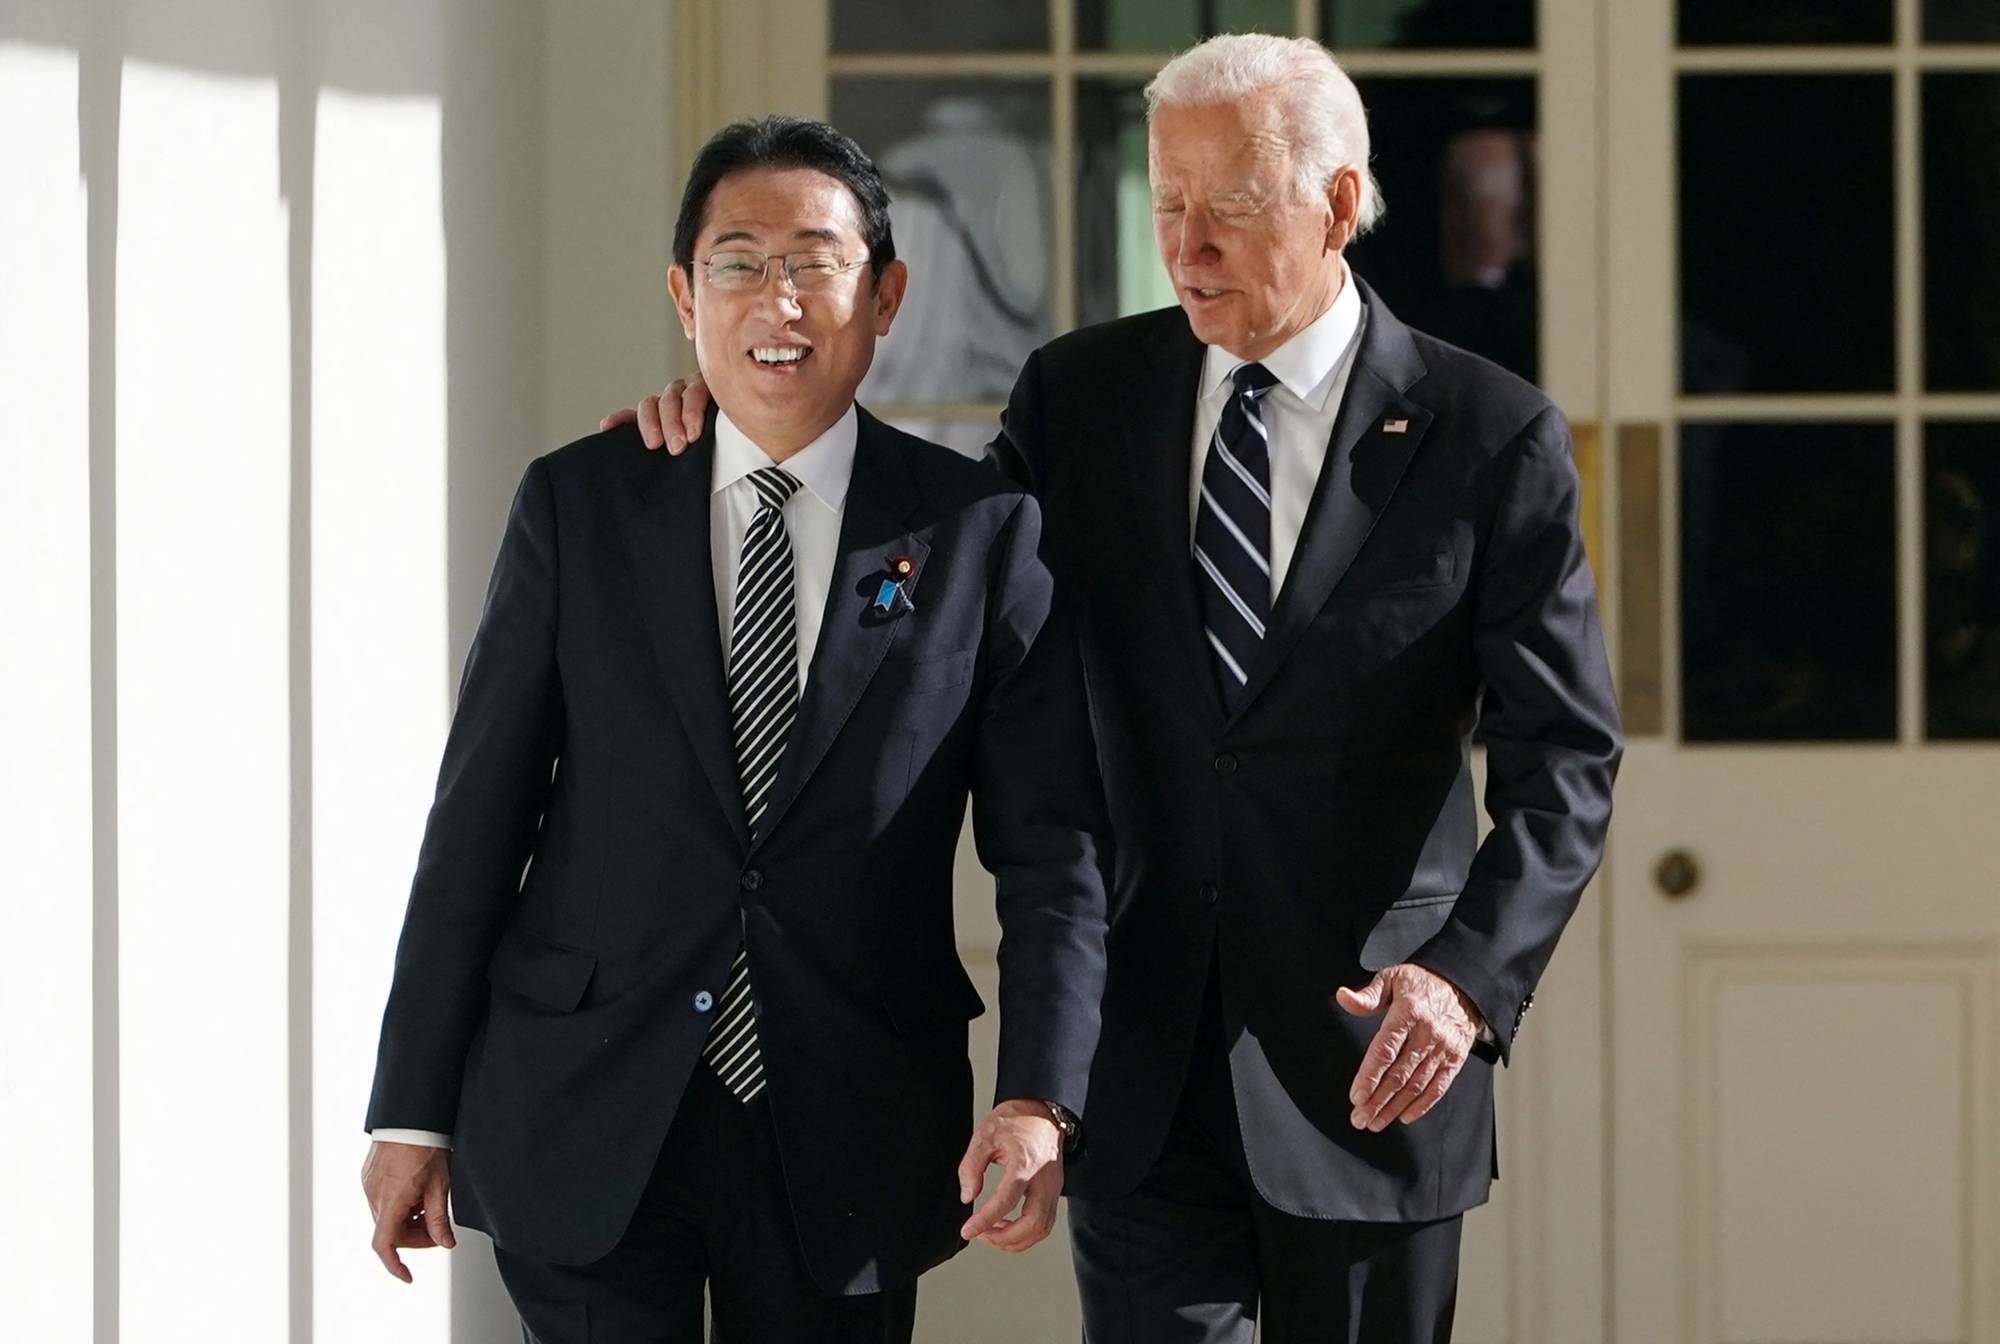 Il governo giapponese concentrato sulla politica estera crolla al minimo dei consensi